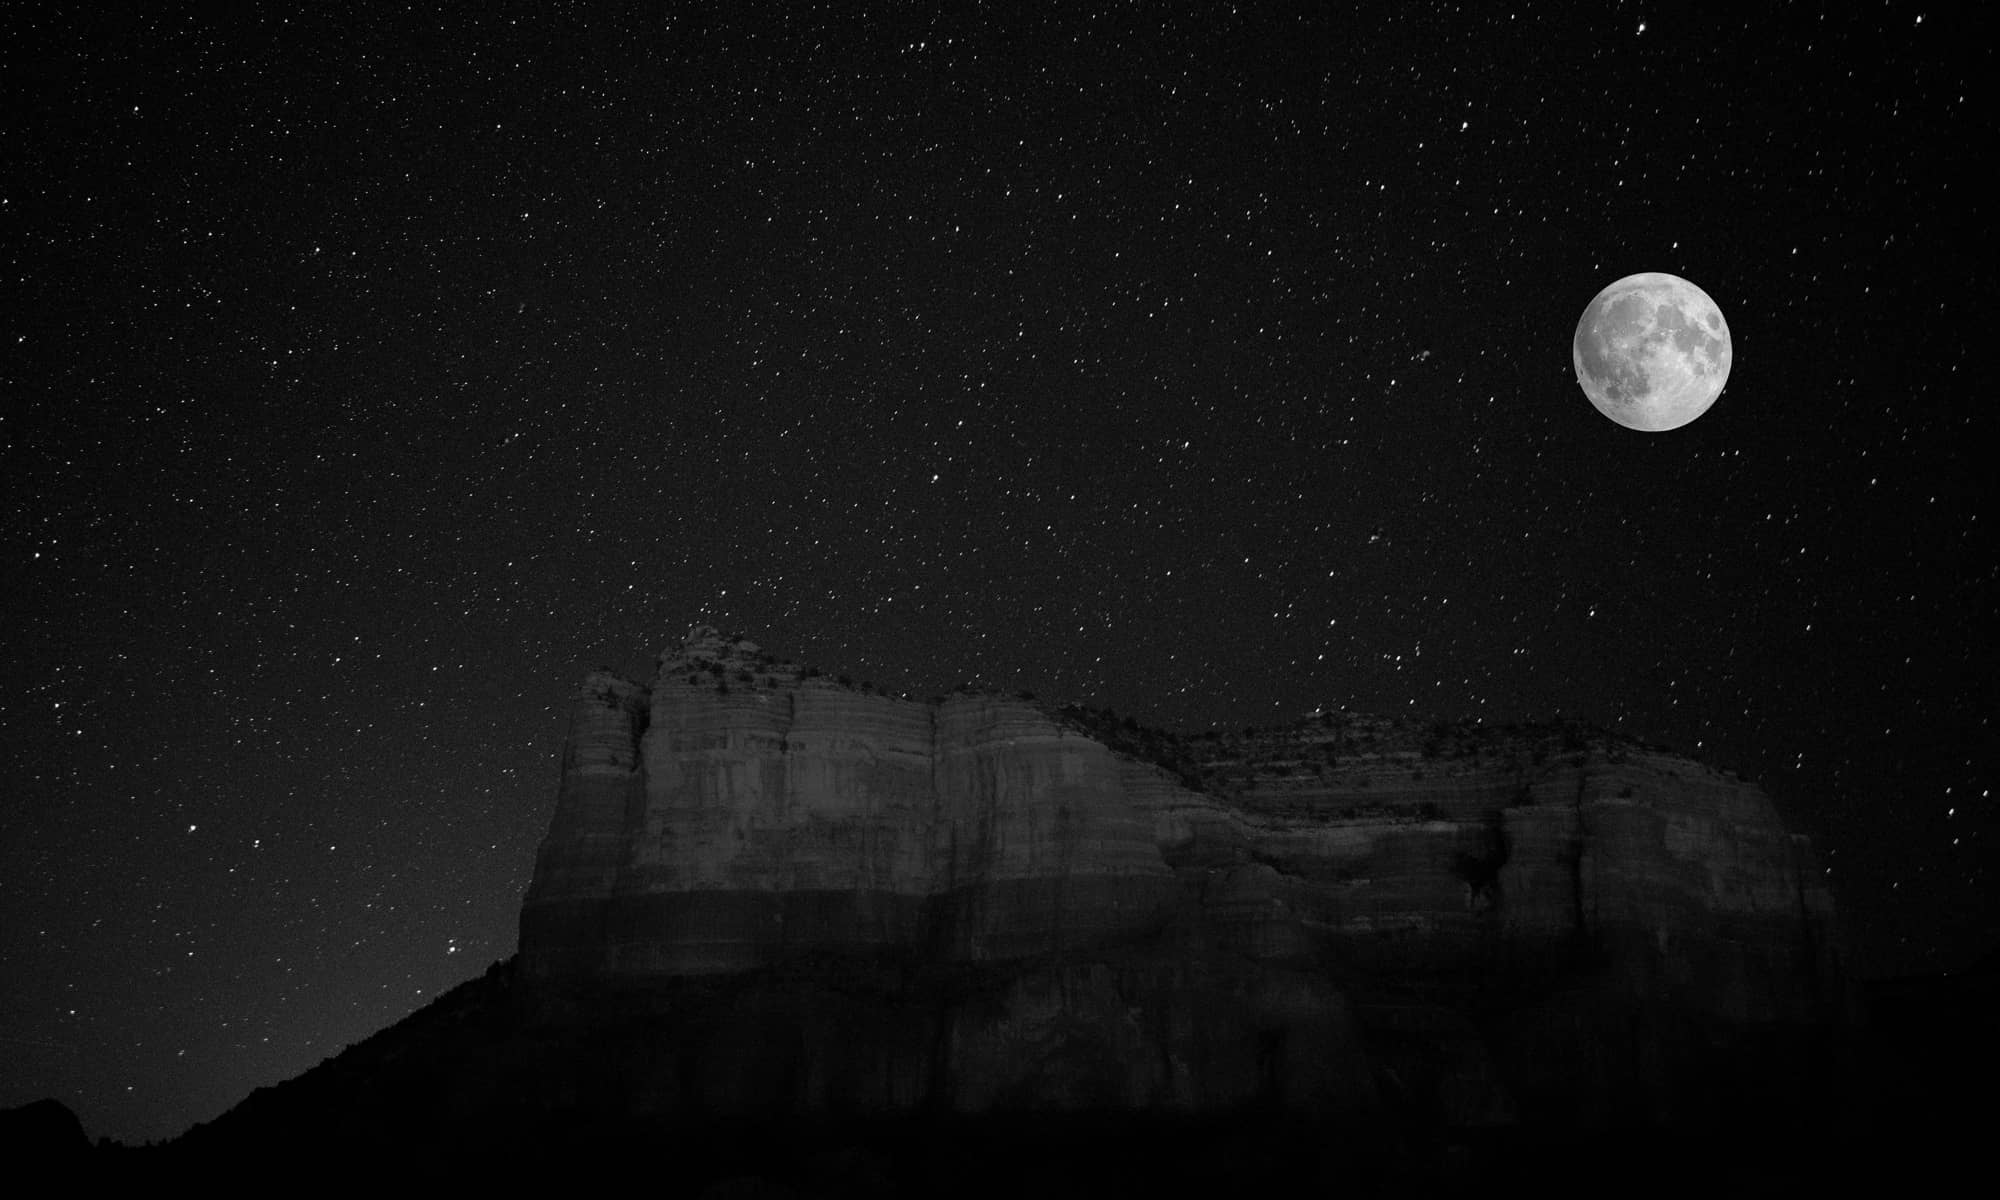 Sedona, Arizona at night with full moon